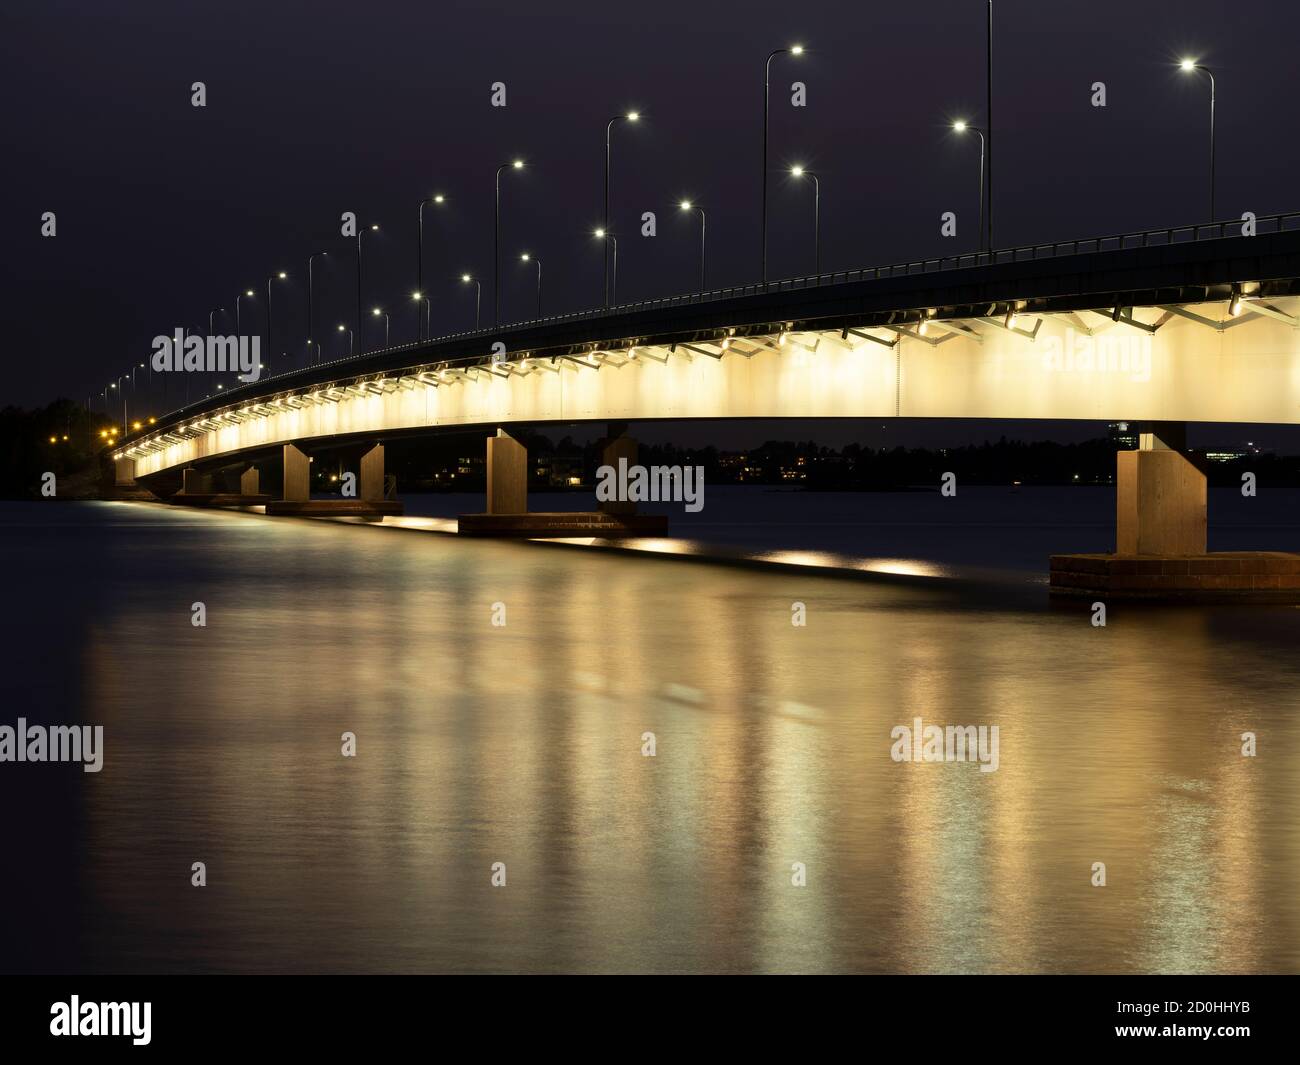 Helsinki/Finlande - 2 OCTOBRE 2020 : un magnifique paysage urbain nocturne d'un pont routier éclairé qui jette des reflets sur l'eau. Banque D'Images